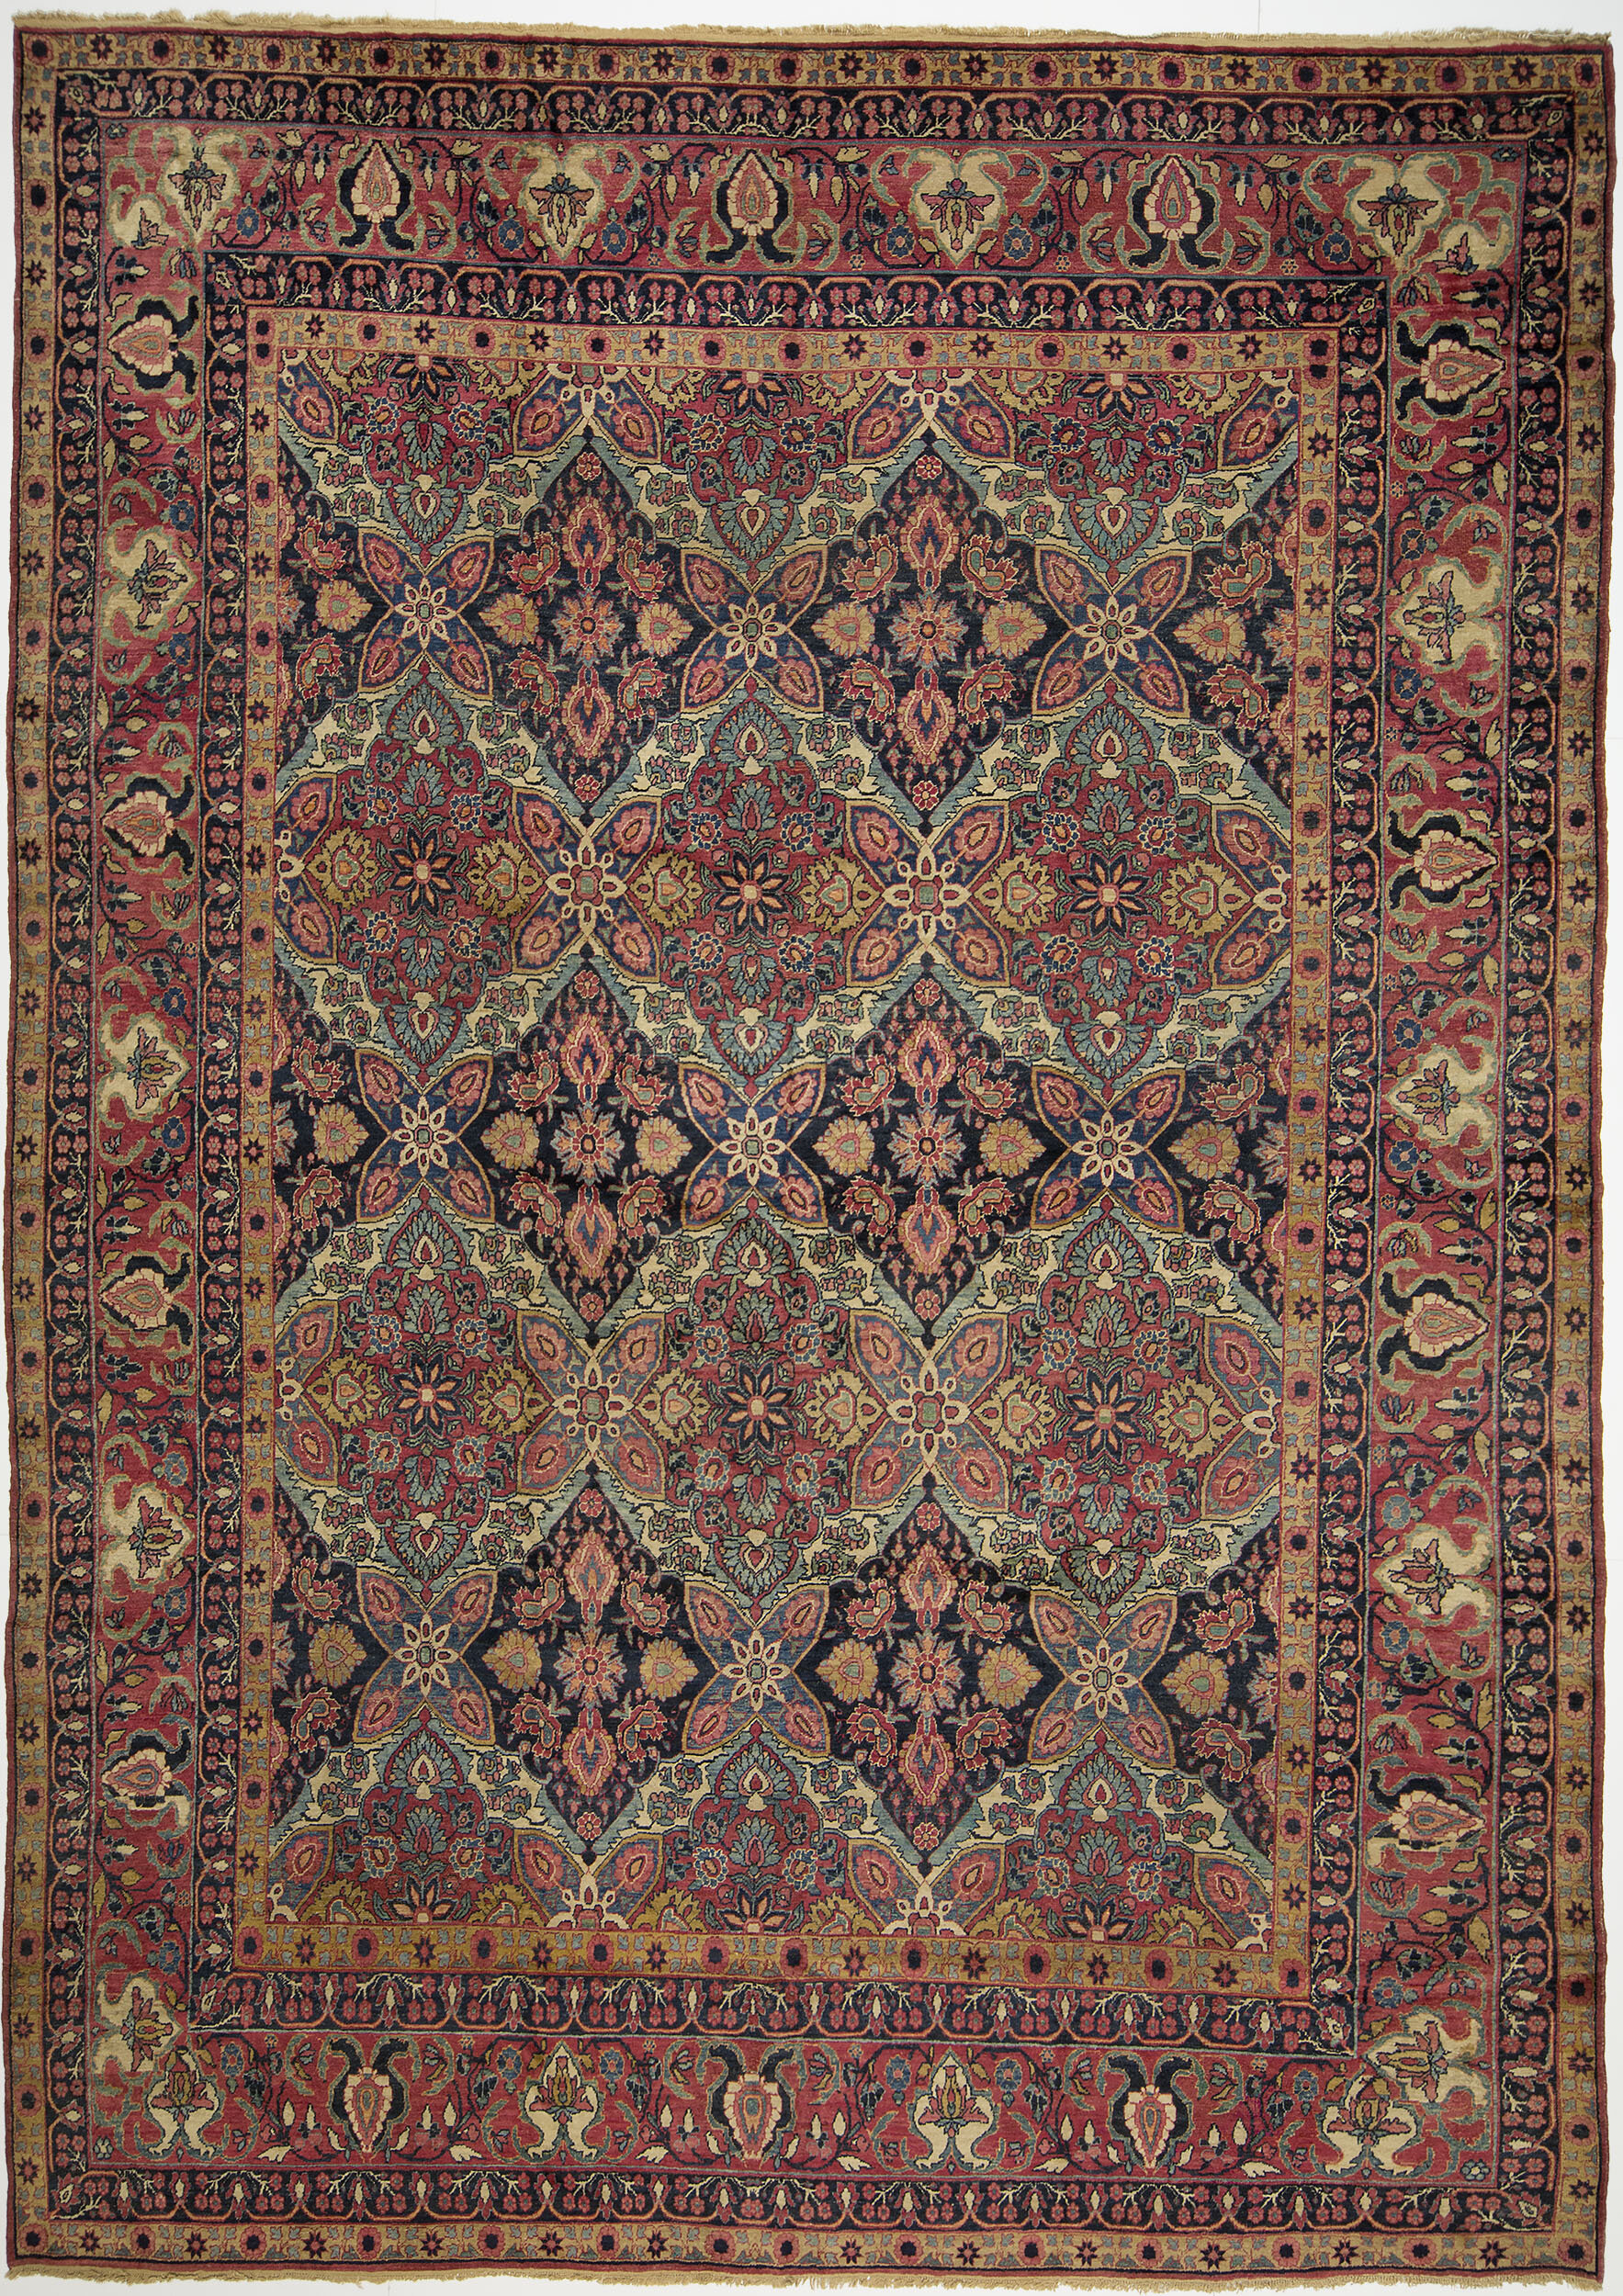 Kerman Carpet 13' 9"x 9' 5" 